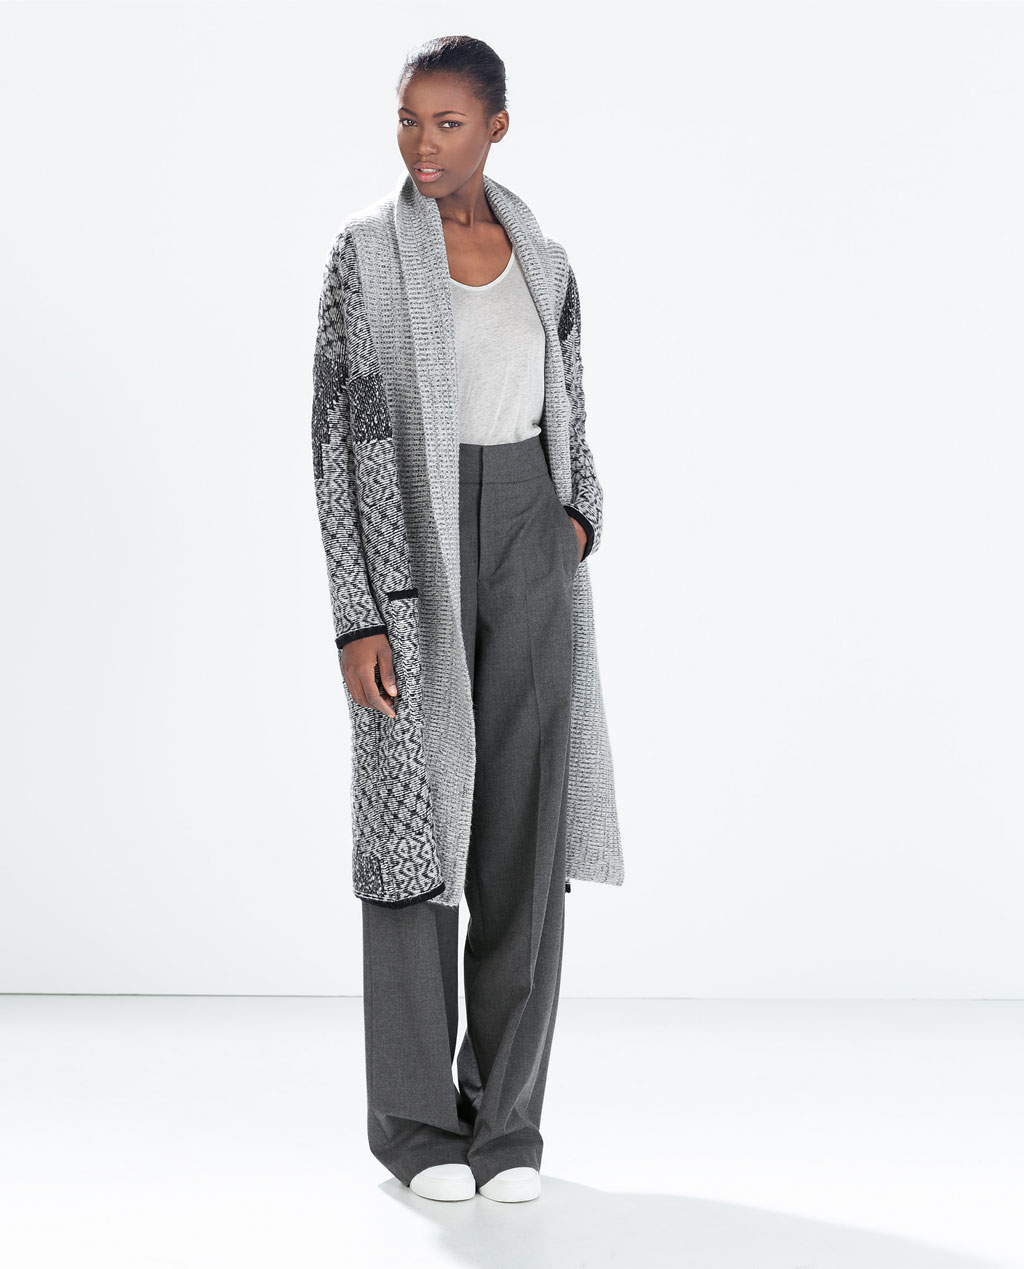 Zara Jacquard Coat with Pockets 79.99 from 129